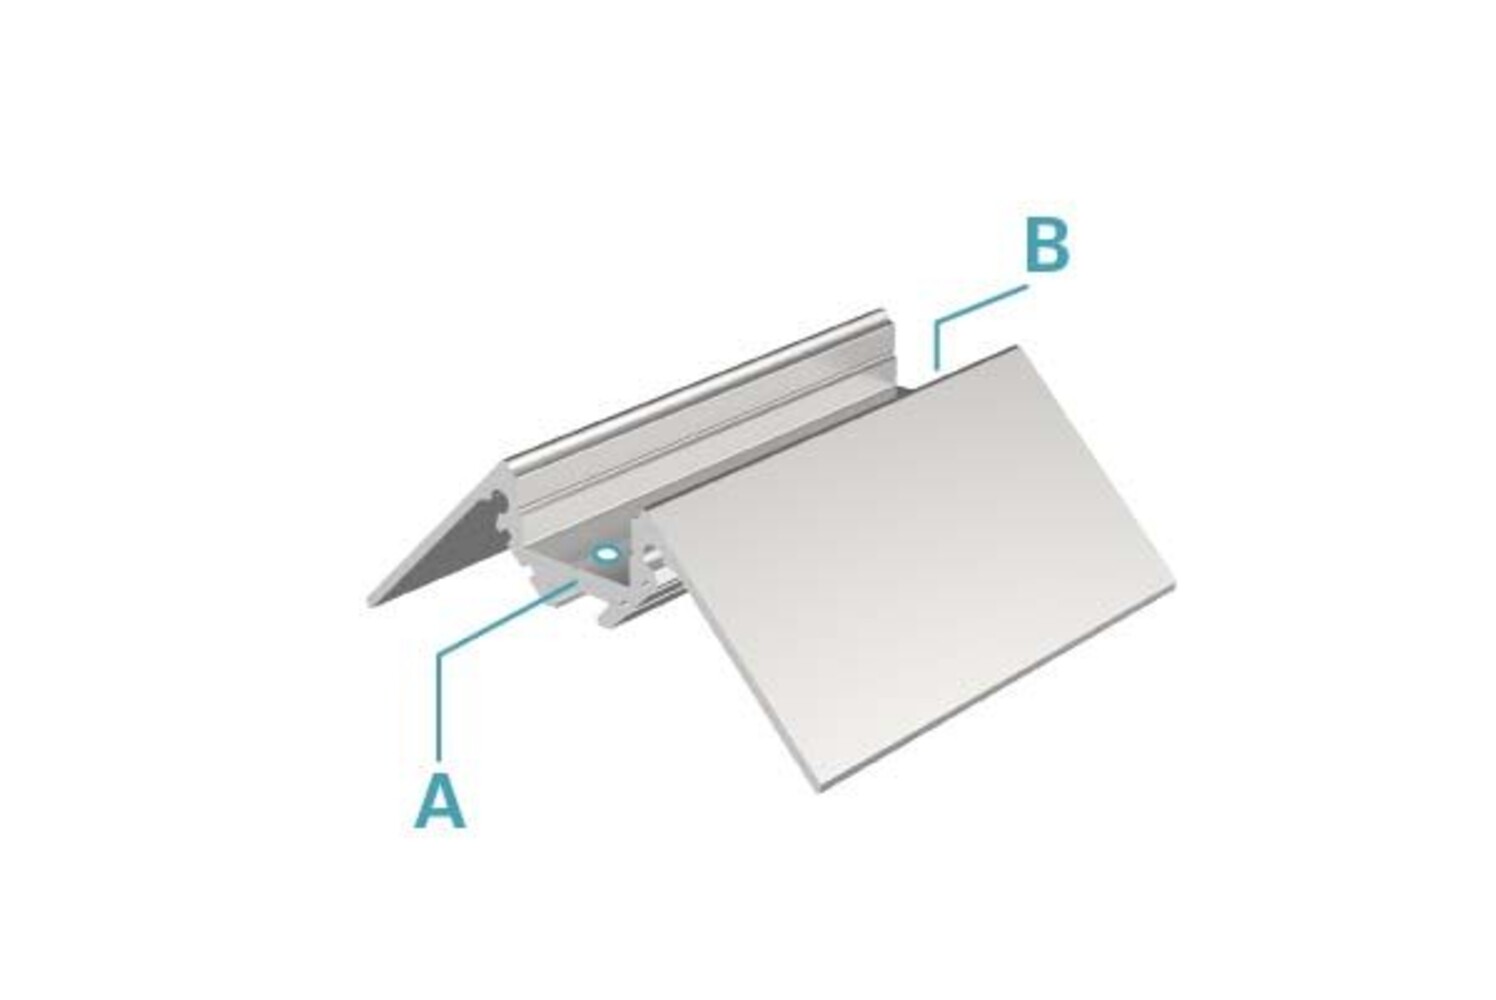 Hochwertiges LED Profil in Weiß von Deko-Light, ideal für 10-11.3mm LED Stripes